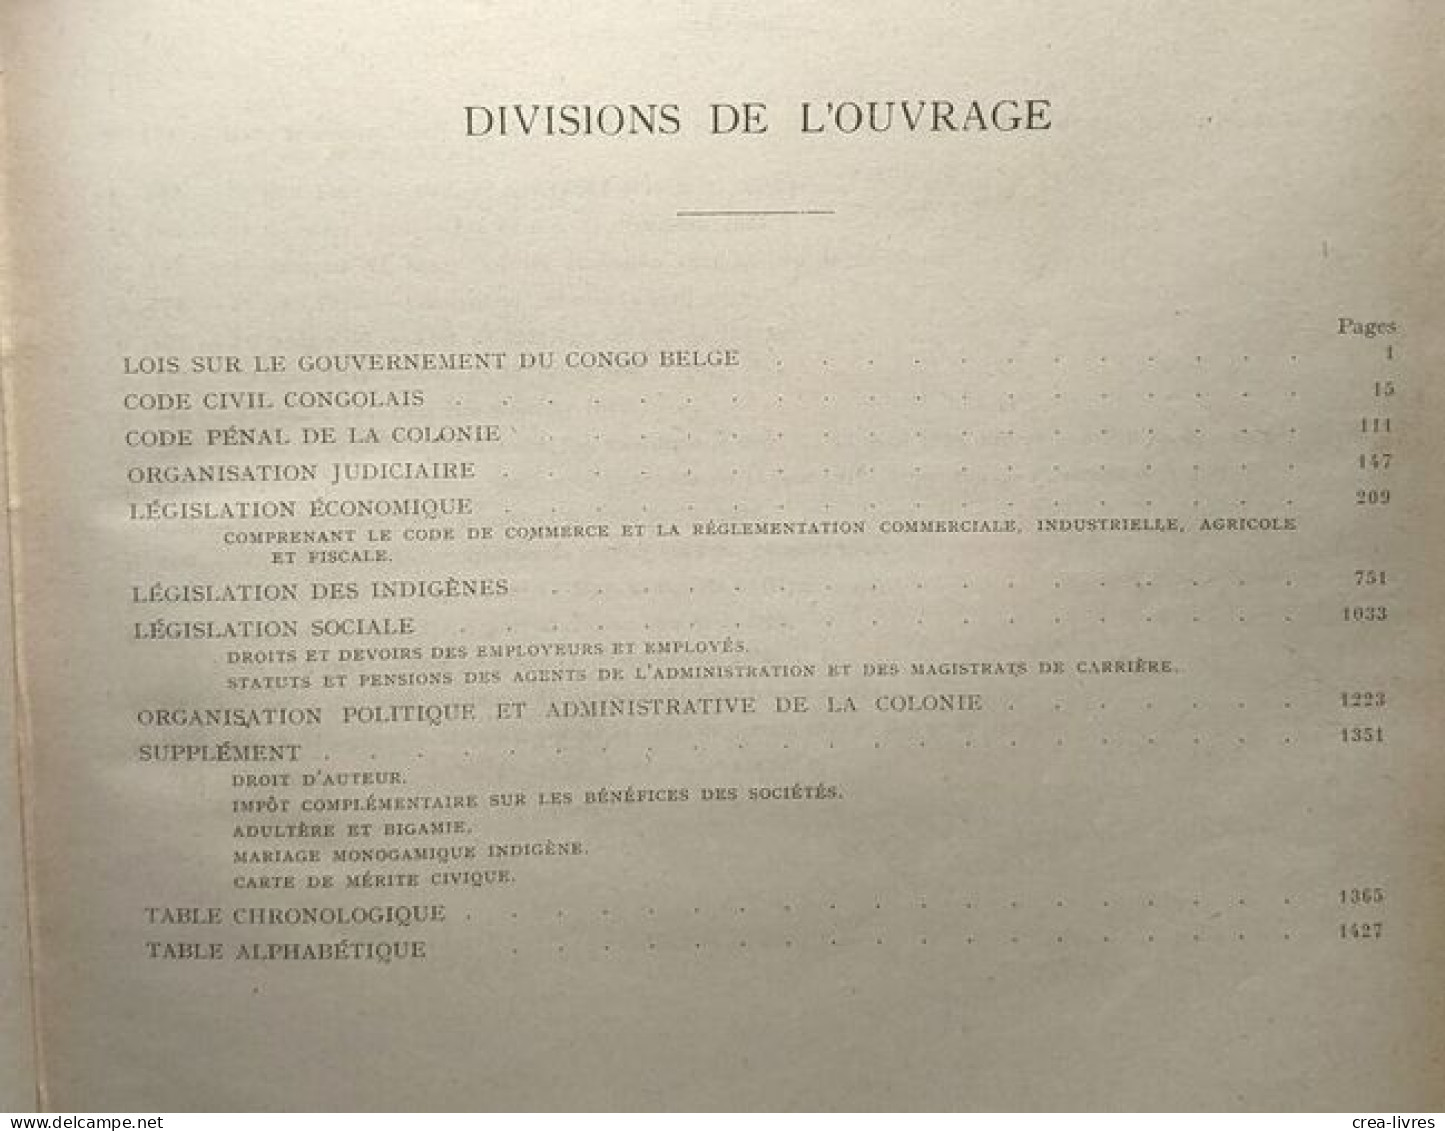 Codes Et Lois Du Congo Belge - Sixième édition Des Codes Louwers Revue Corrigée Et Augmentée - Derecho